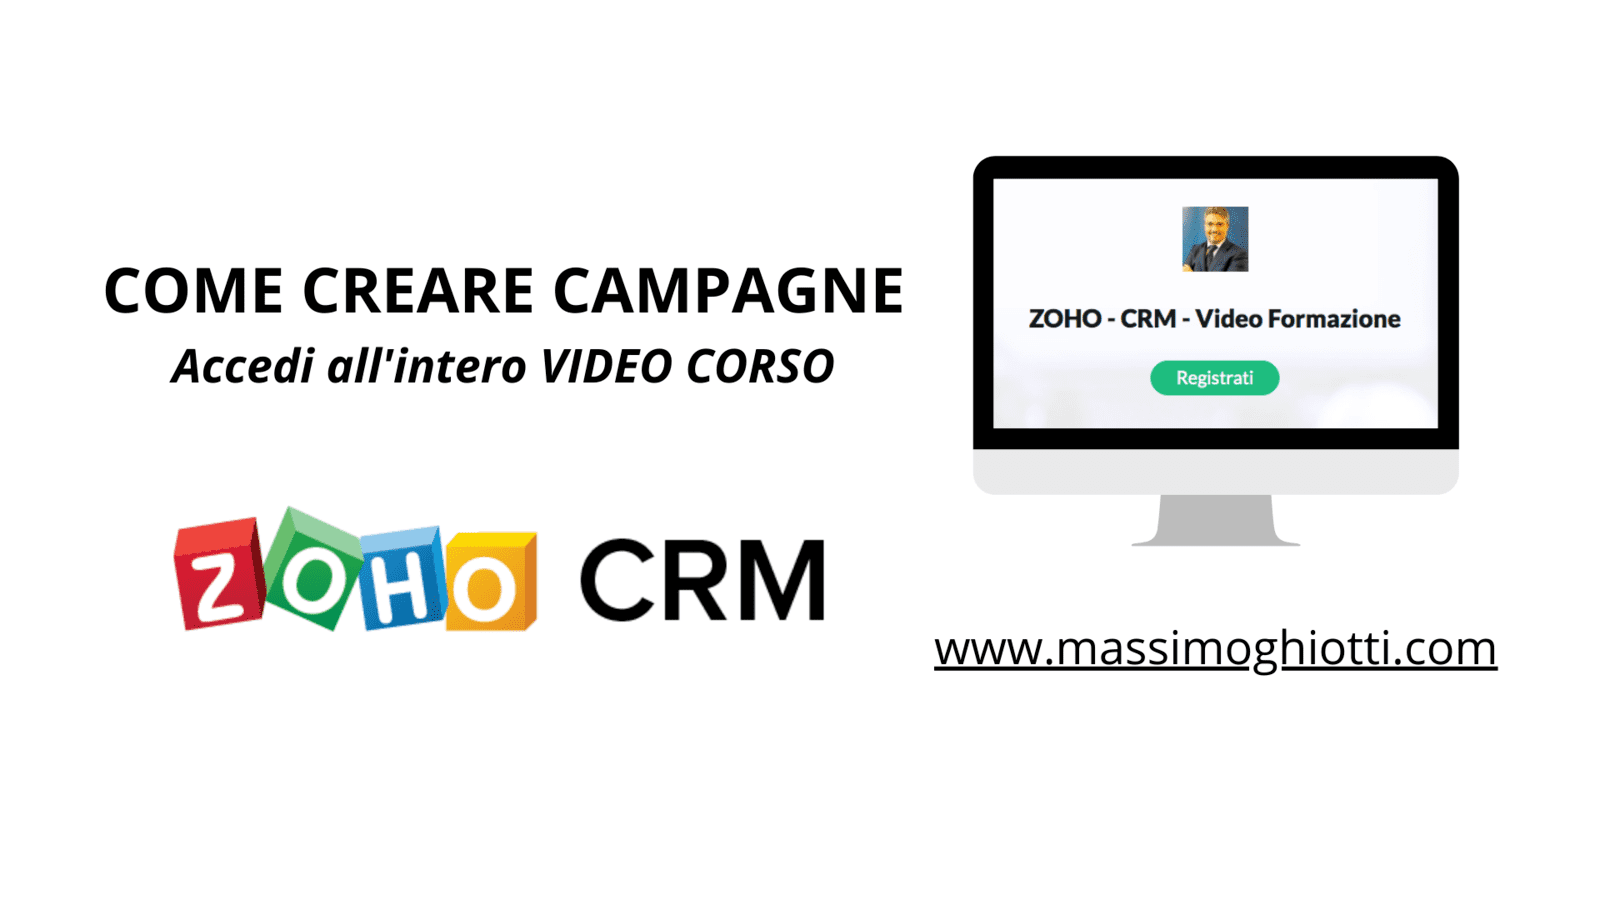 CRM ZOHO - COME CREARE CAMPAGNE